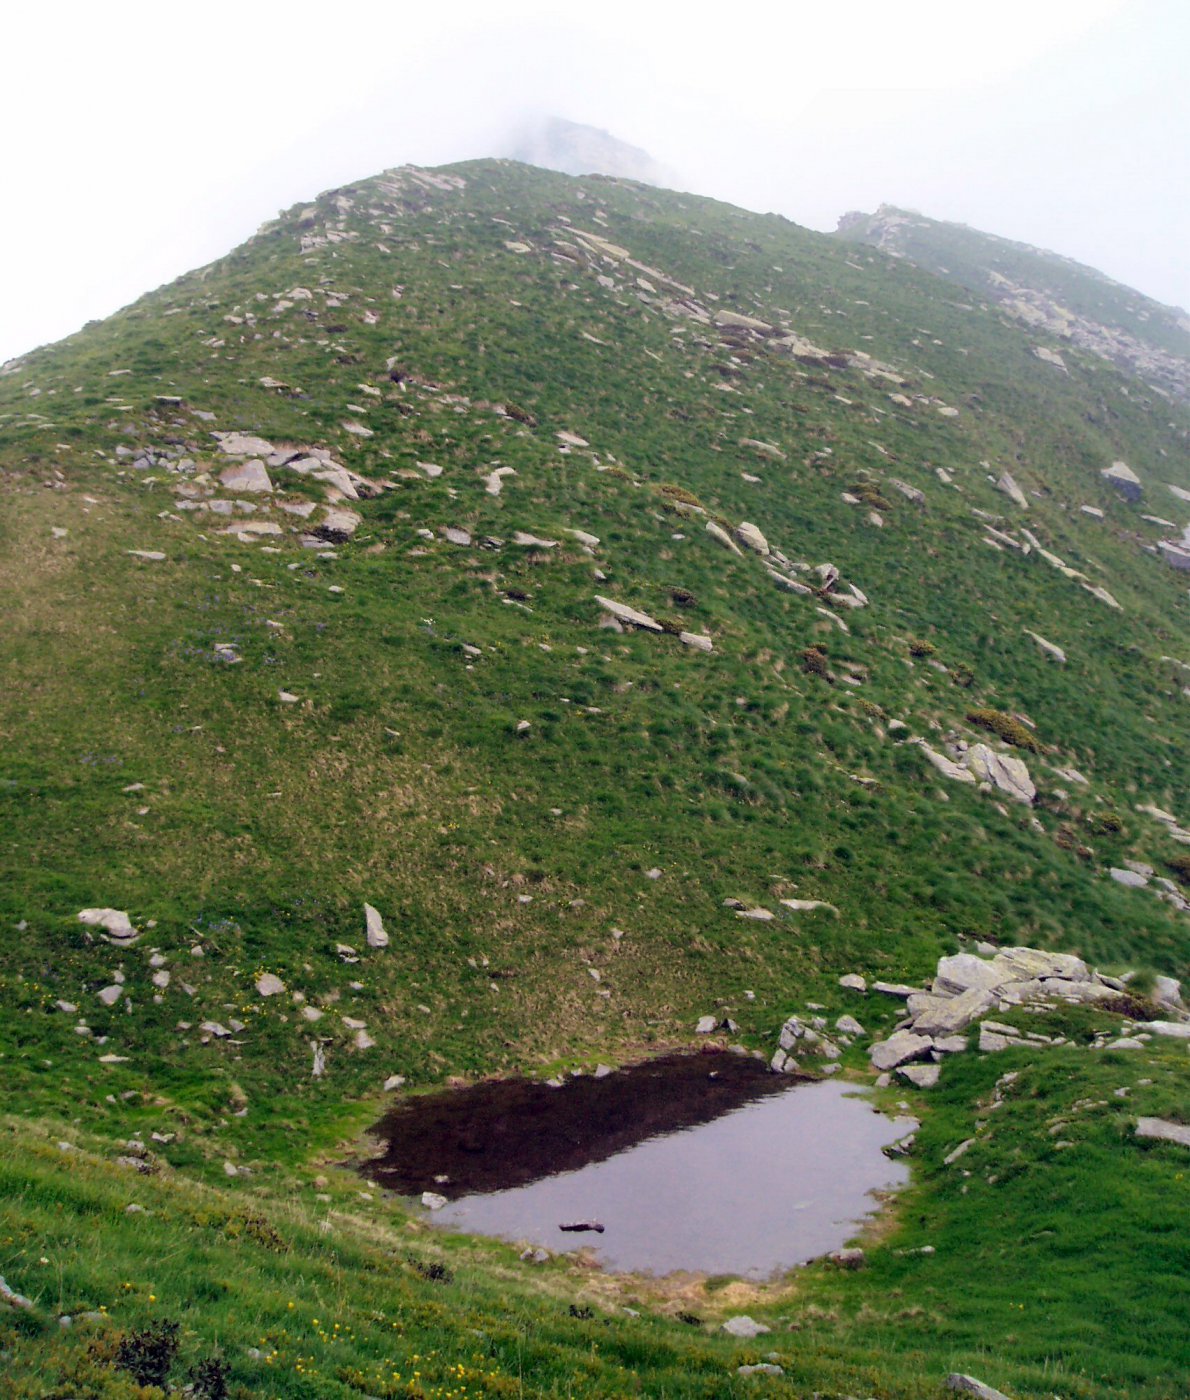 Piccolo laghetto che si trova sul percorso verso Cima Testona.